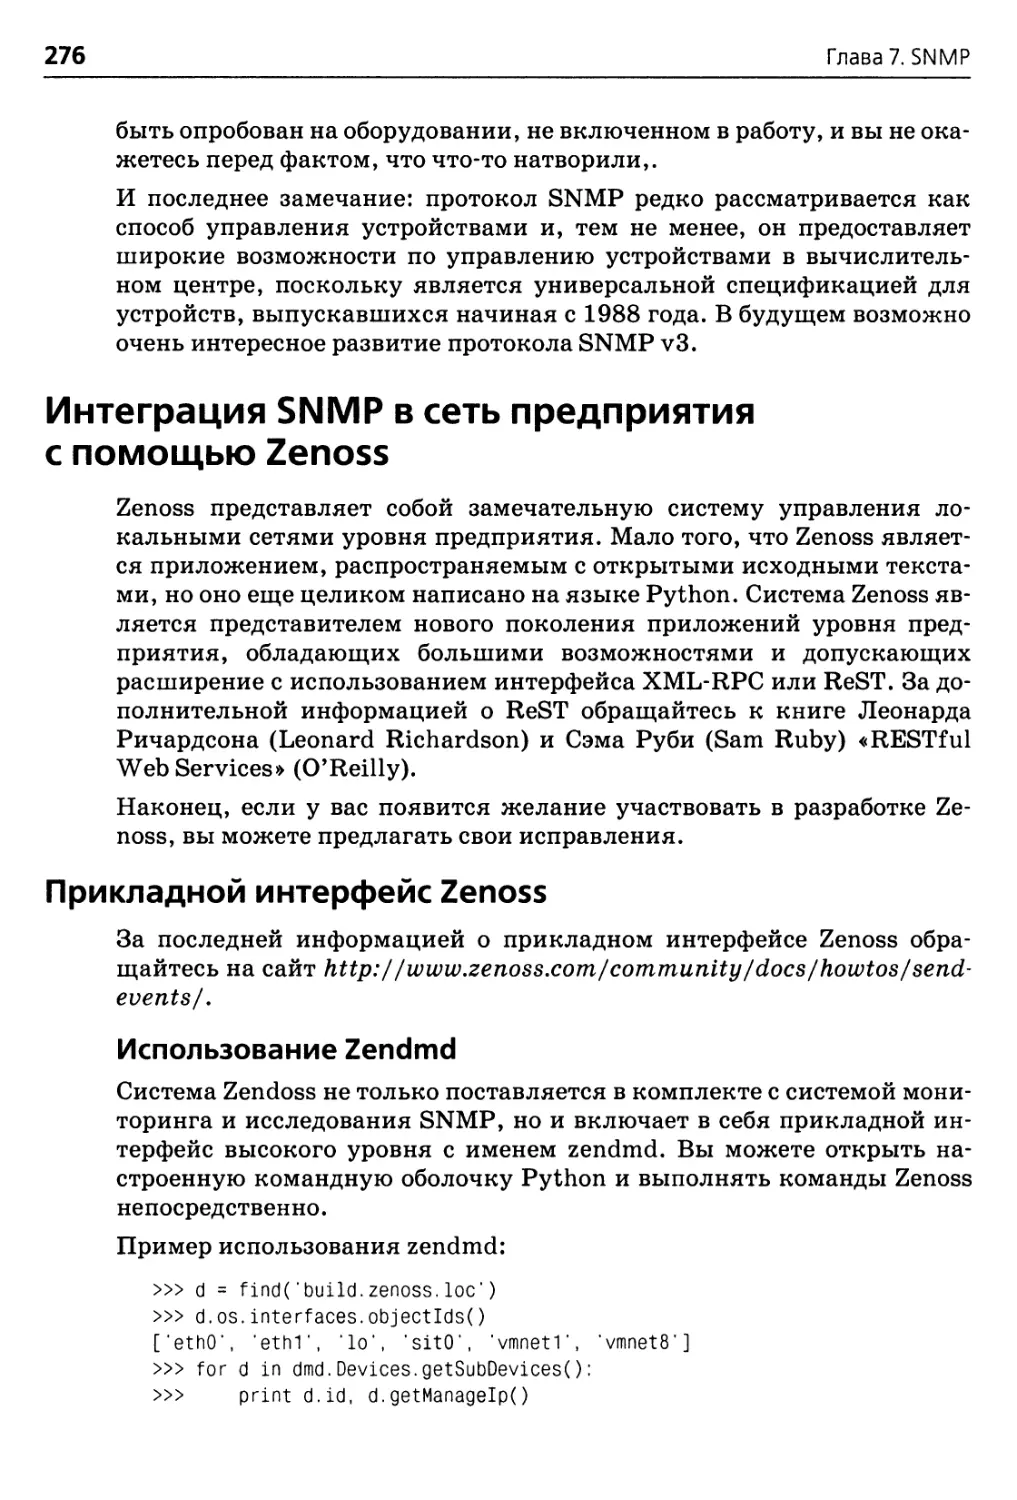 Интеграция SNMP в сеть предприятия с помощью Zenoss